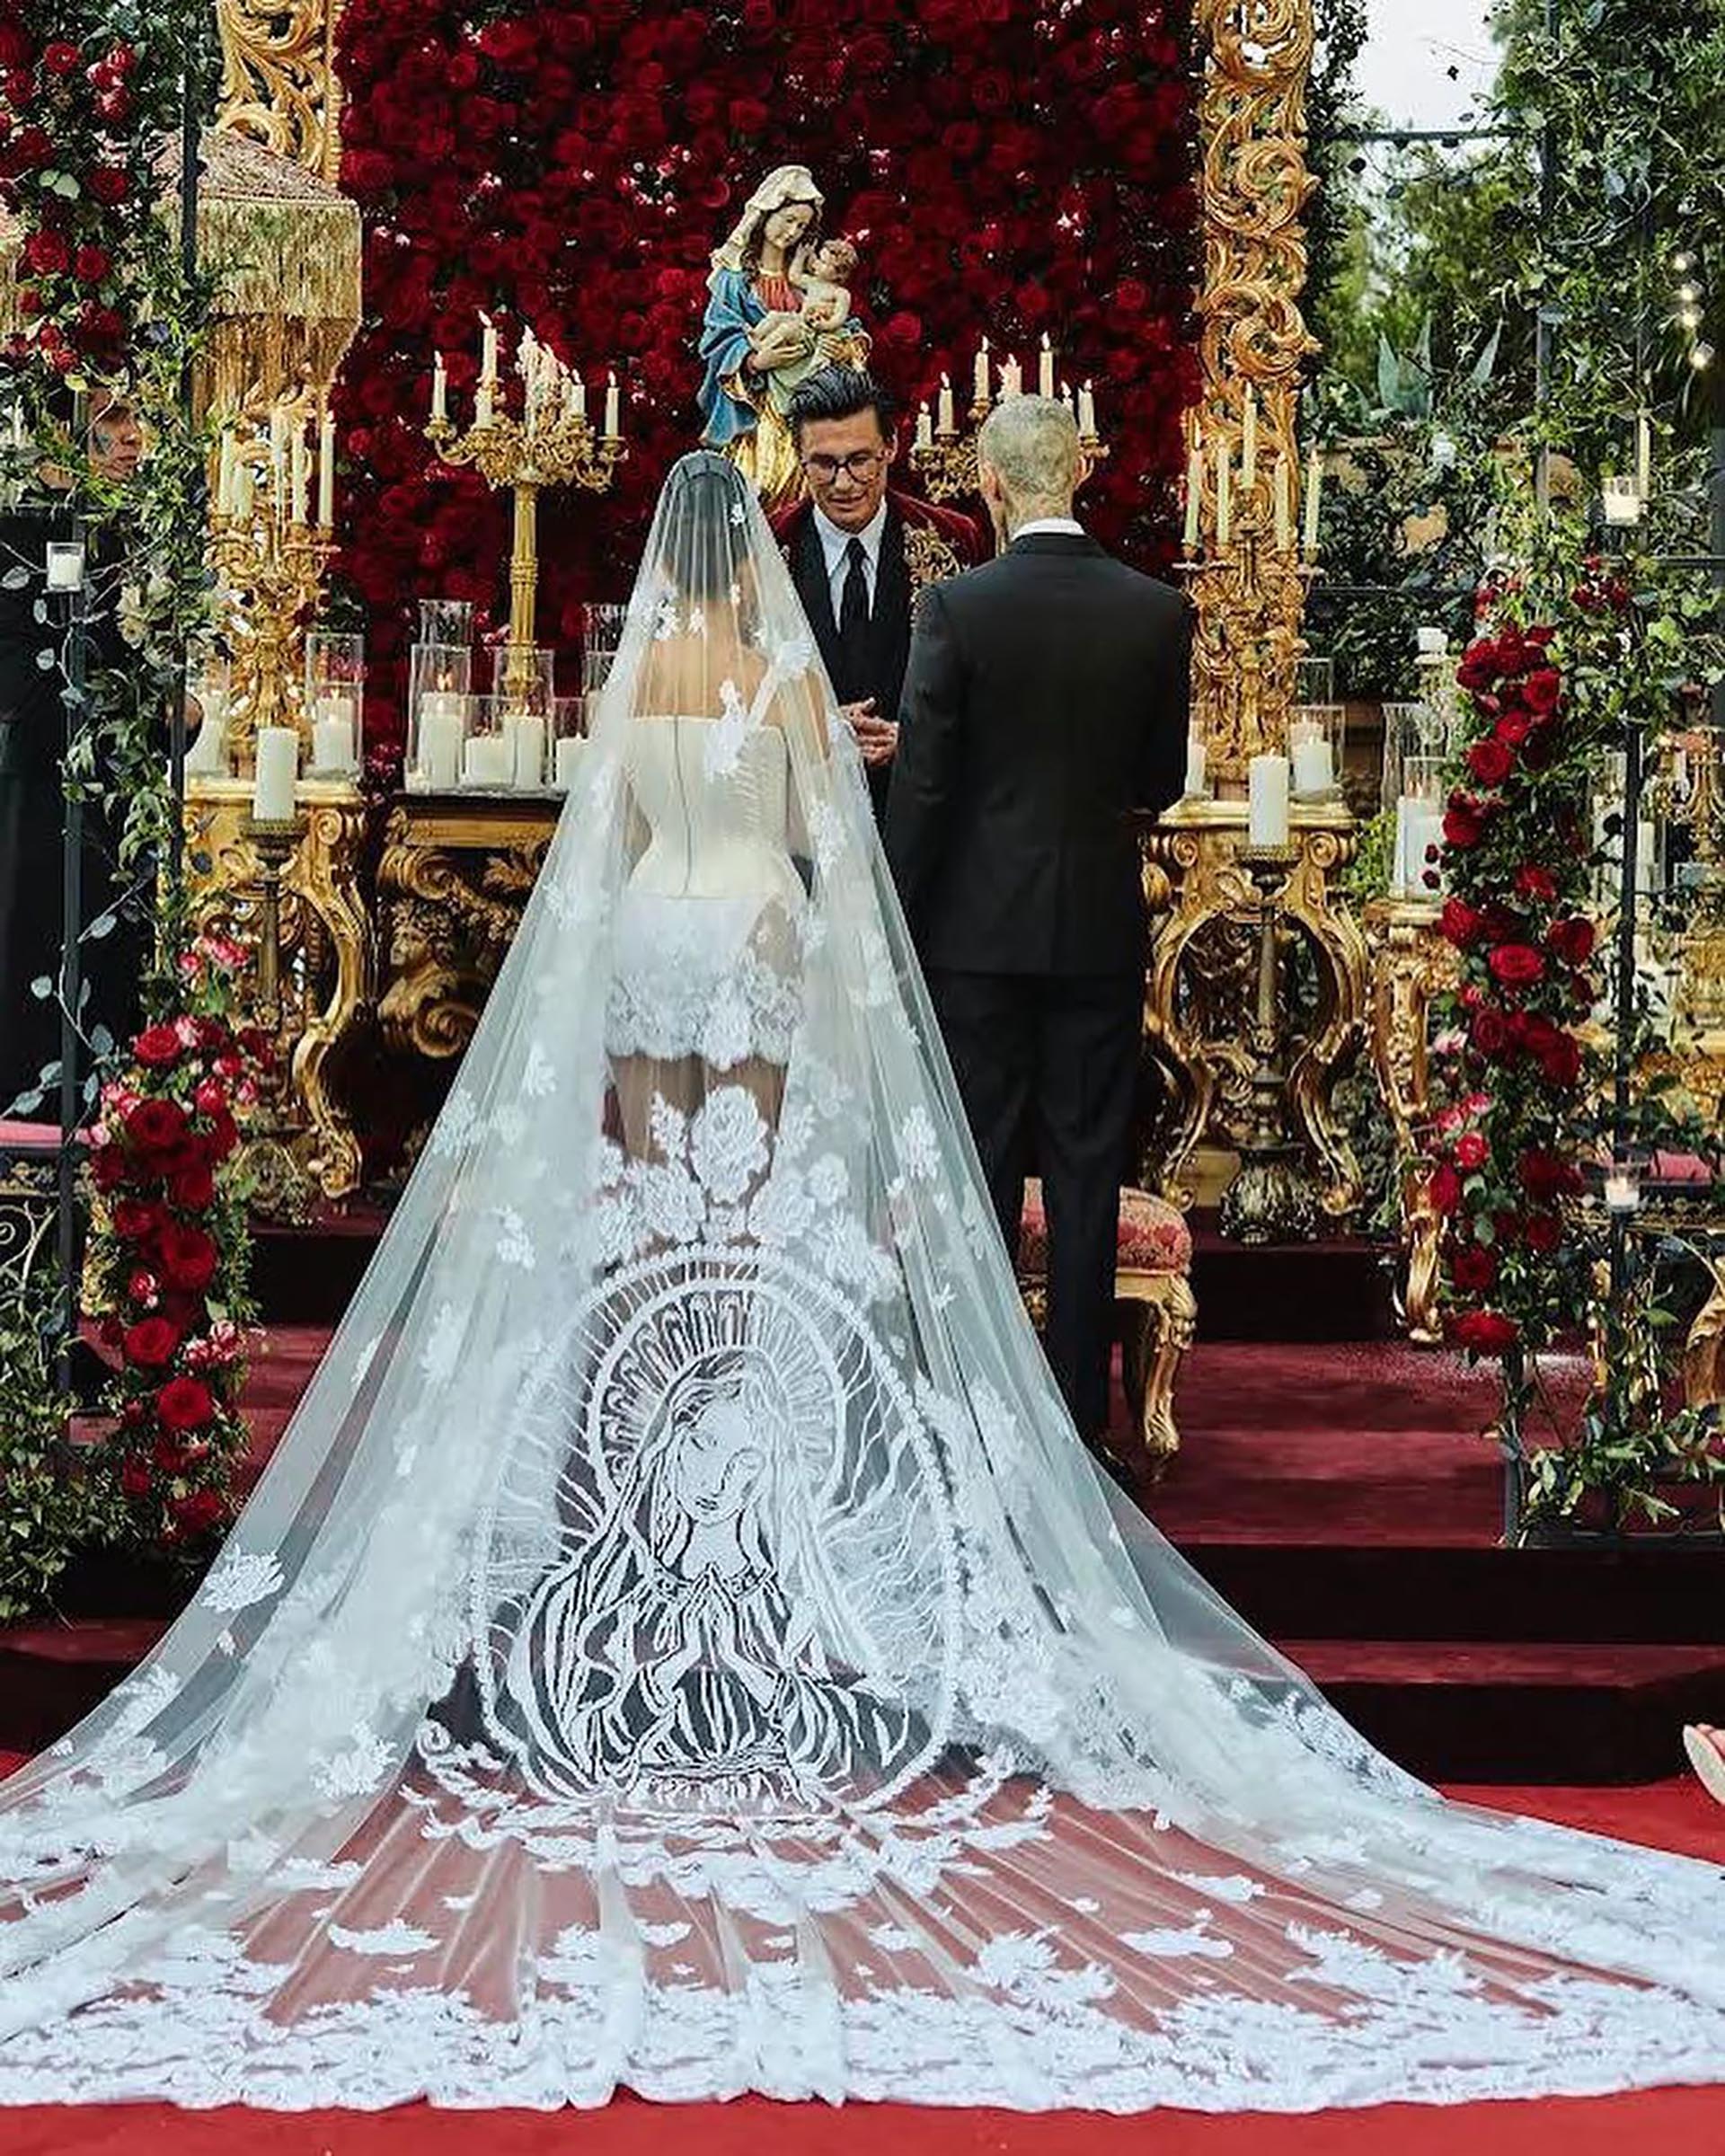 Kourtney Kardashian and Travis Barker get married during a luxurious millionaire wedding in Italy (@kourtneykardash)